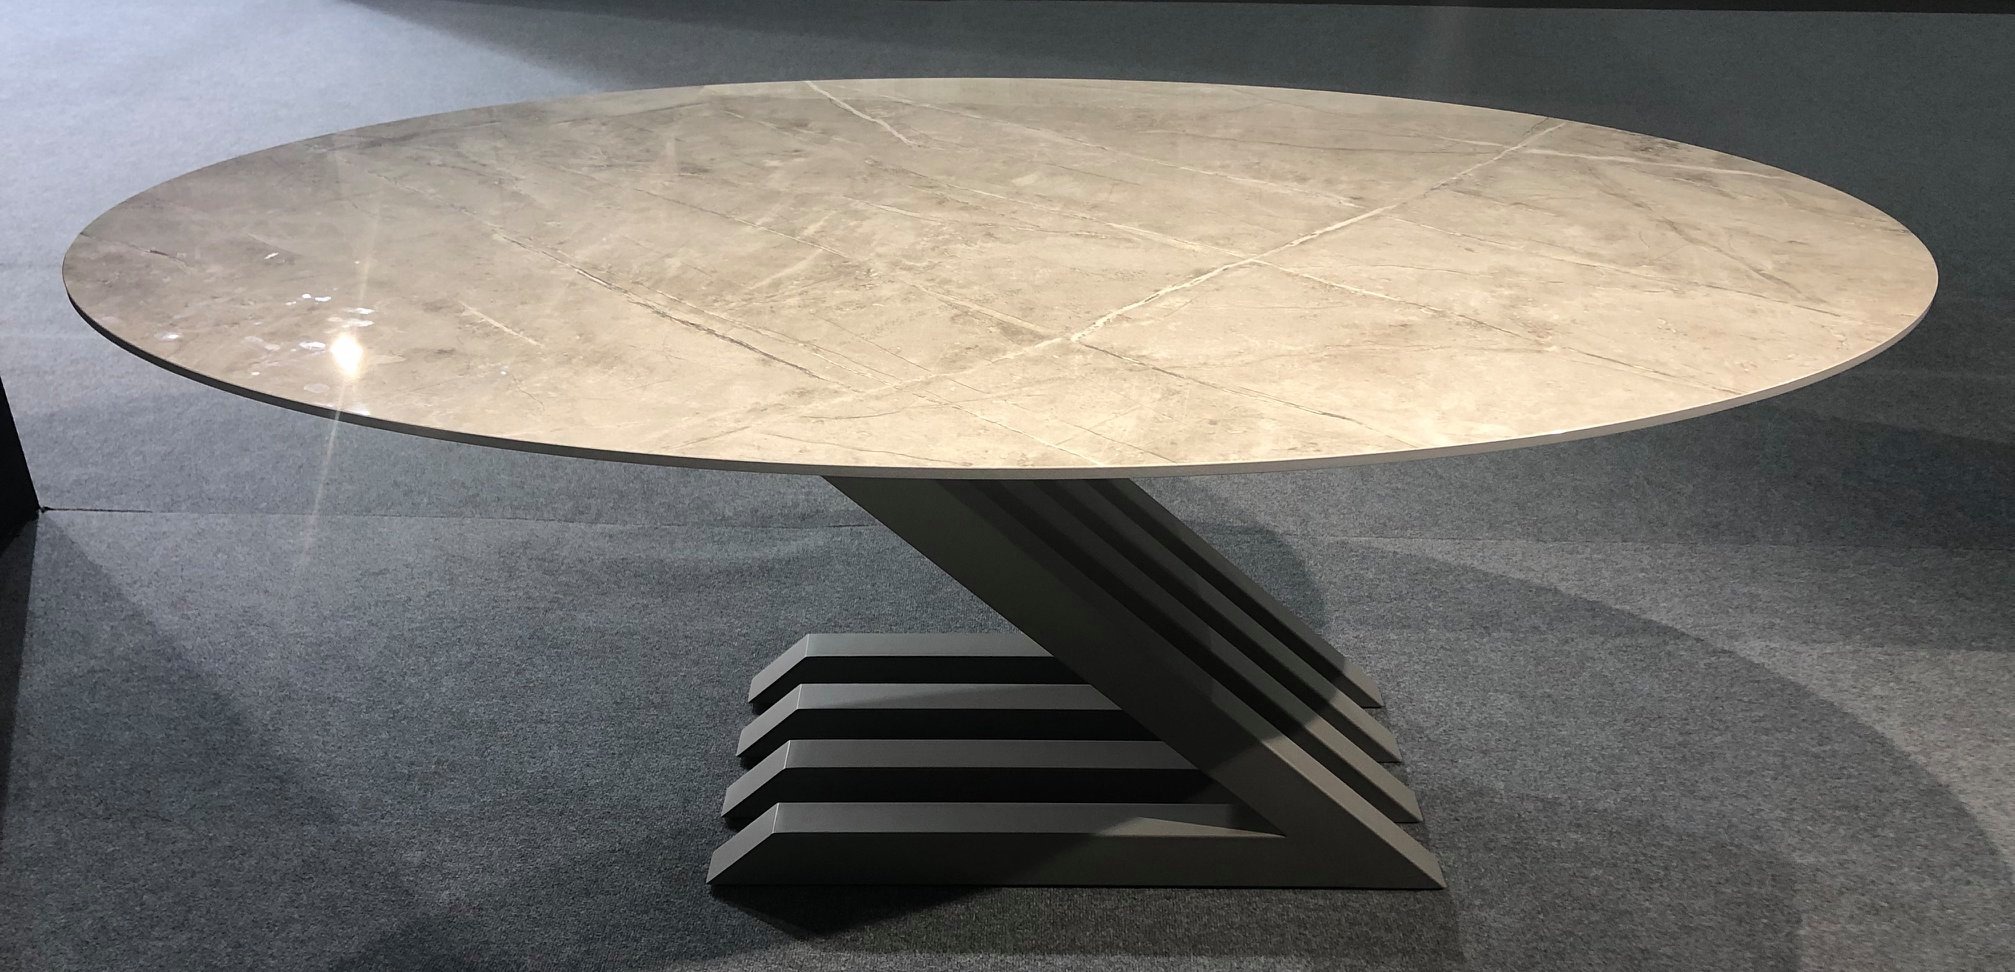 Table ovale céramique, dekton pied Z en métal design haut de gamme de qualité pour hôtel restaurant